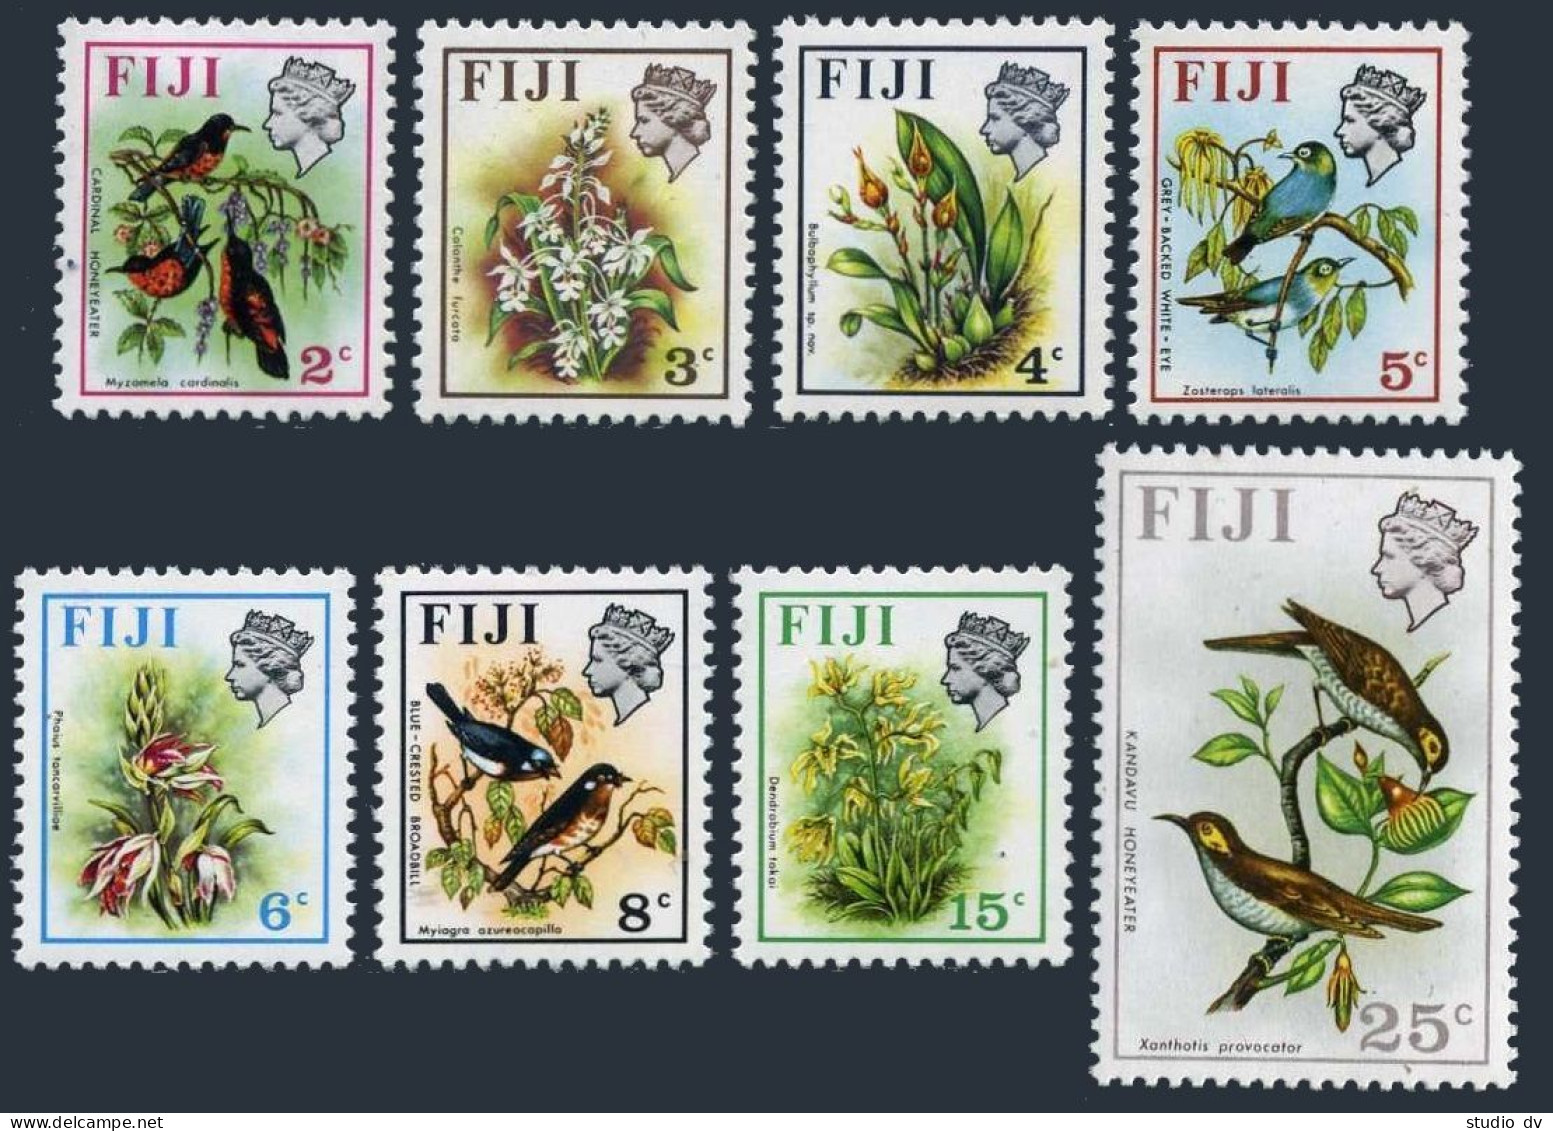 Fiji 306c-313a, 315a, 8 Stamps Wmk 314 Sideways, MNH. Birds 1973. - Fiji (1970-...)